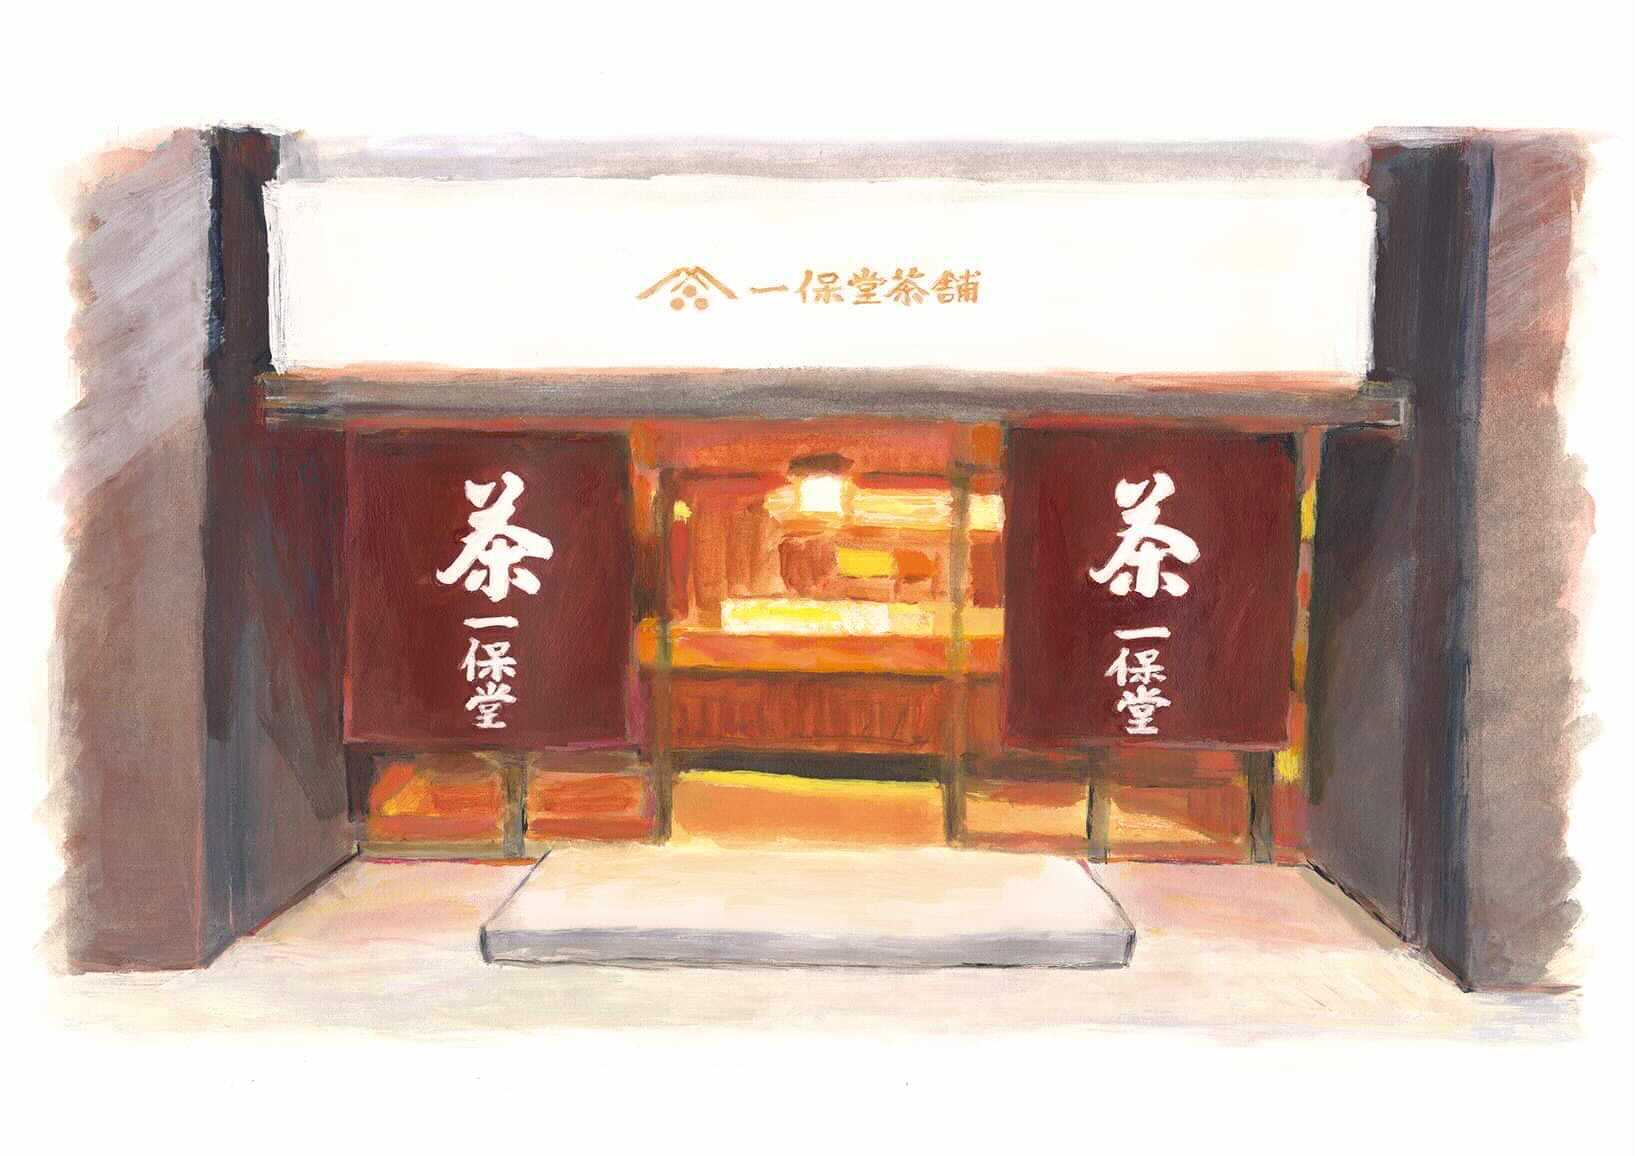 Tokyo Marunouchi Store: Kaboku Tearoom – Shortened hours (Closes at 6:00 p.m.)